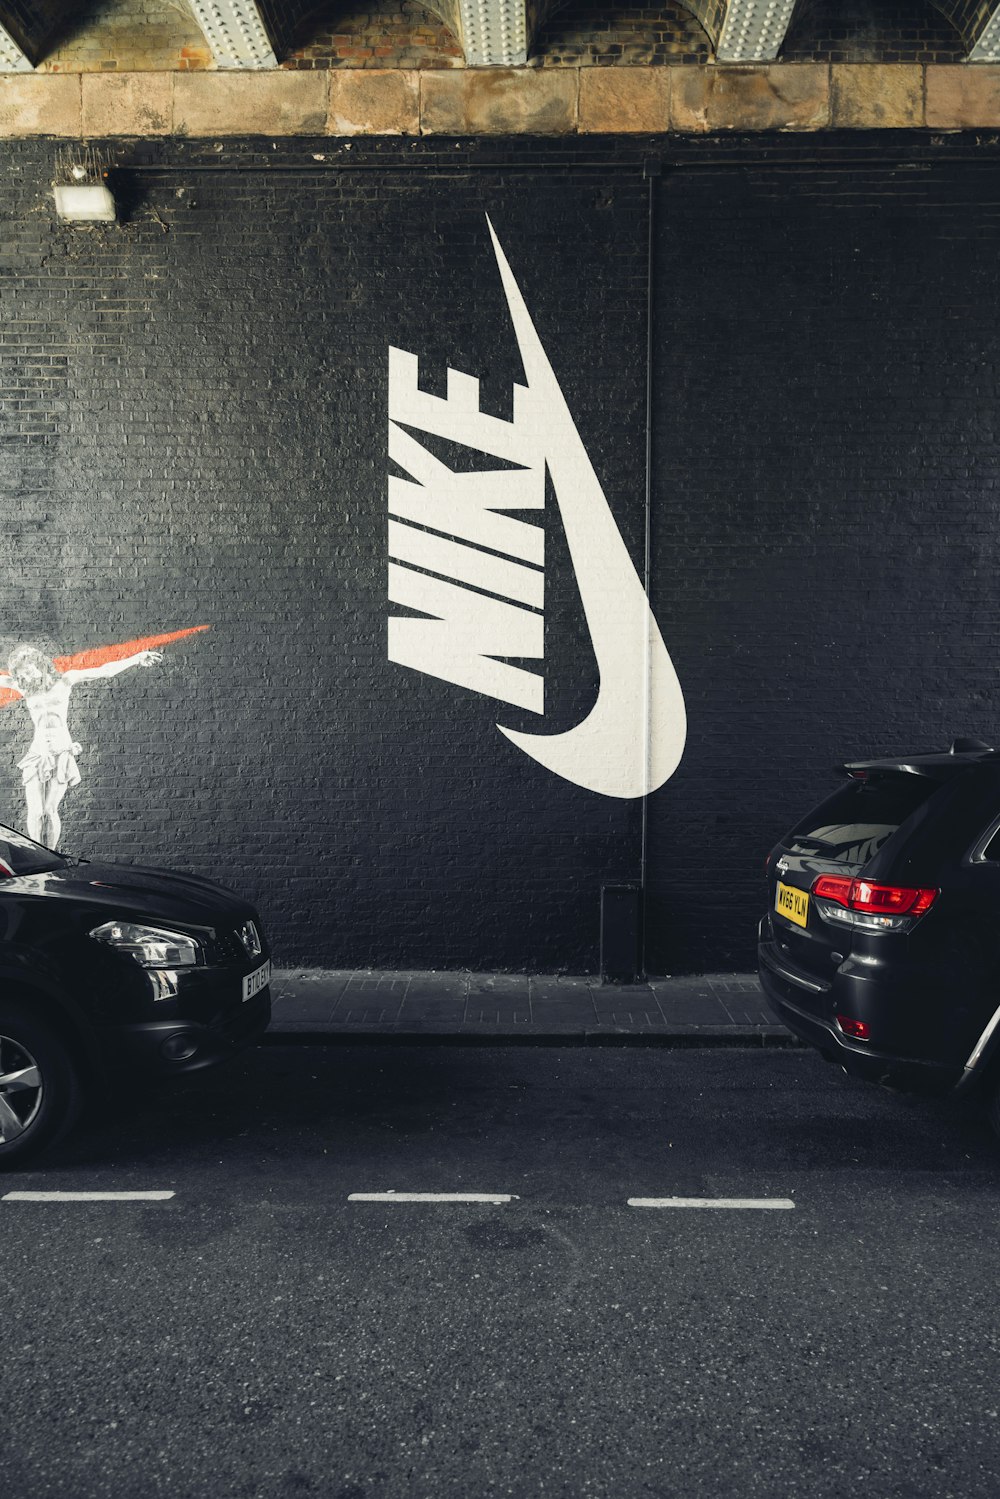 Tren Emociónate Antorchas Nike Wallpapers: Descarga HD gratuita [500+ HQ] | Unsplash